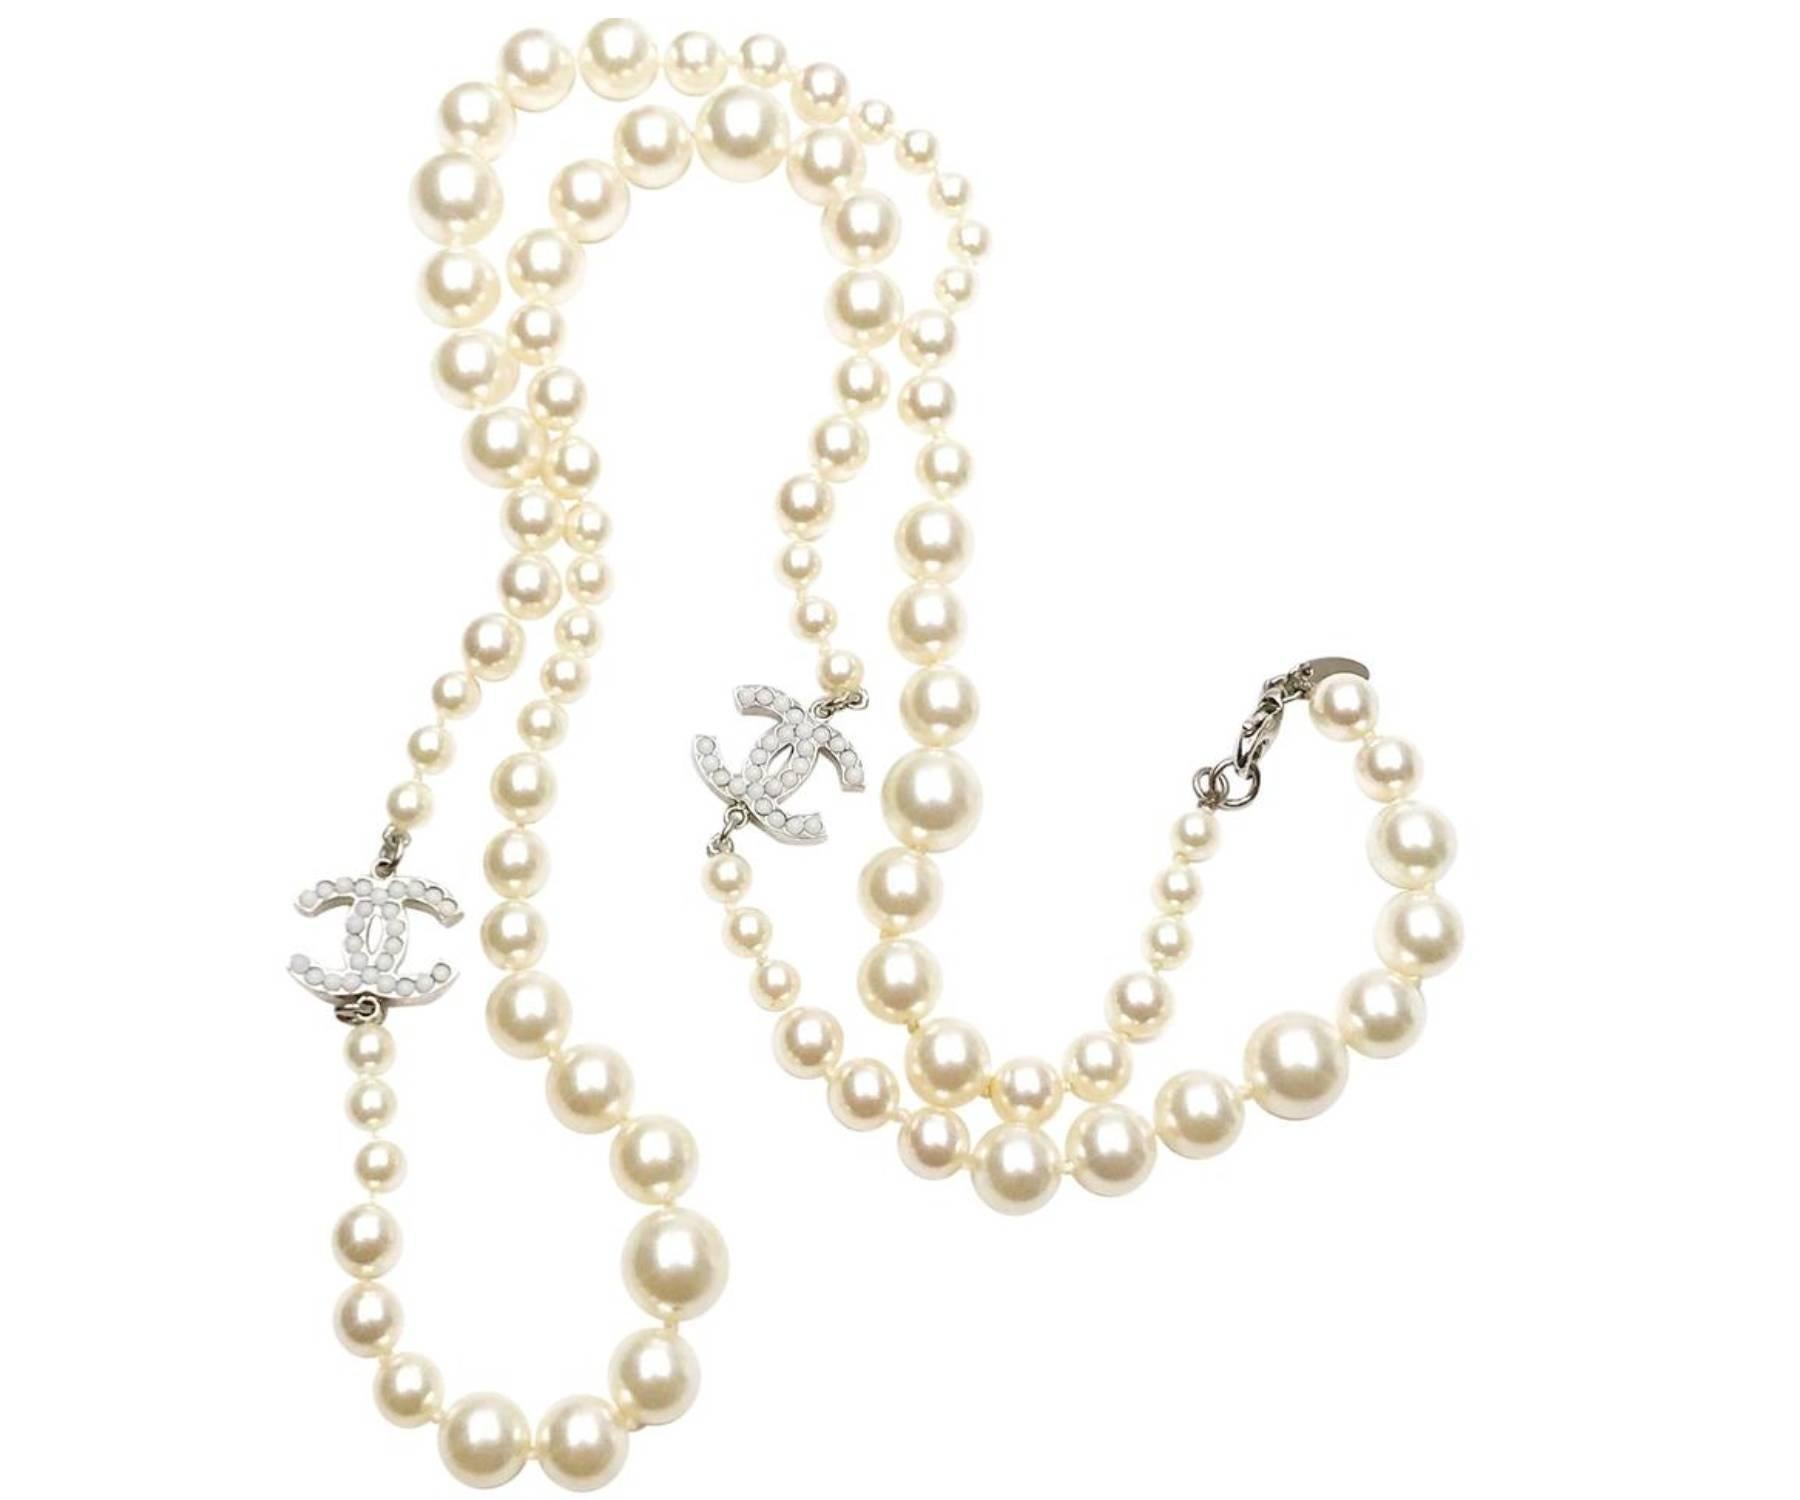 Chanel Classic 2 Silber CC Weiß Perlenkette

*Markiert 10
*Hergestellt in Frankreich
*Kommt mit dem Originalkarton

-Er ist ungefähr 34″ lang.
-Trage sie als lange Halskette oder wickle sie doppelt als kurze Halskette
-sehr klassisch und schön
-In